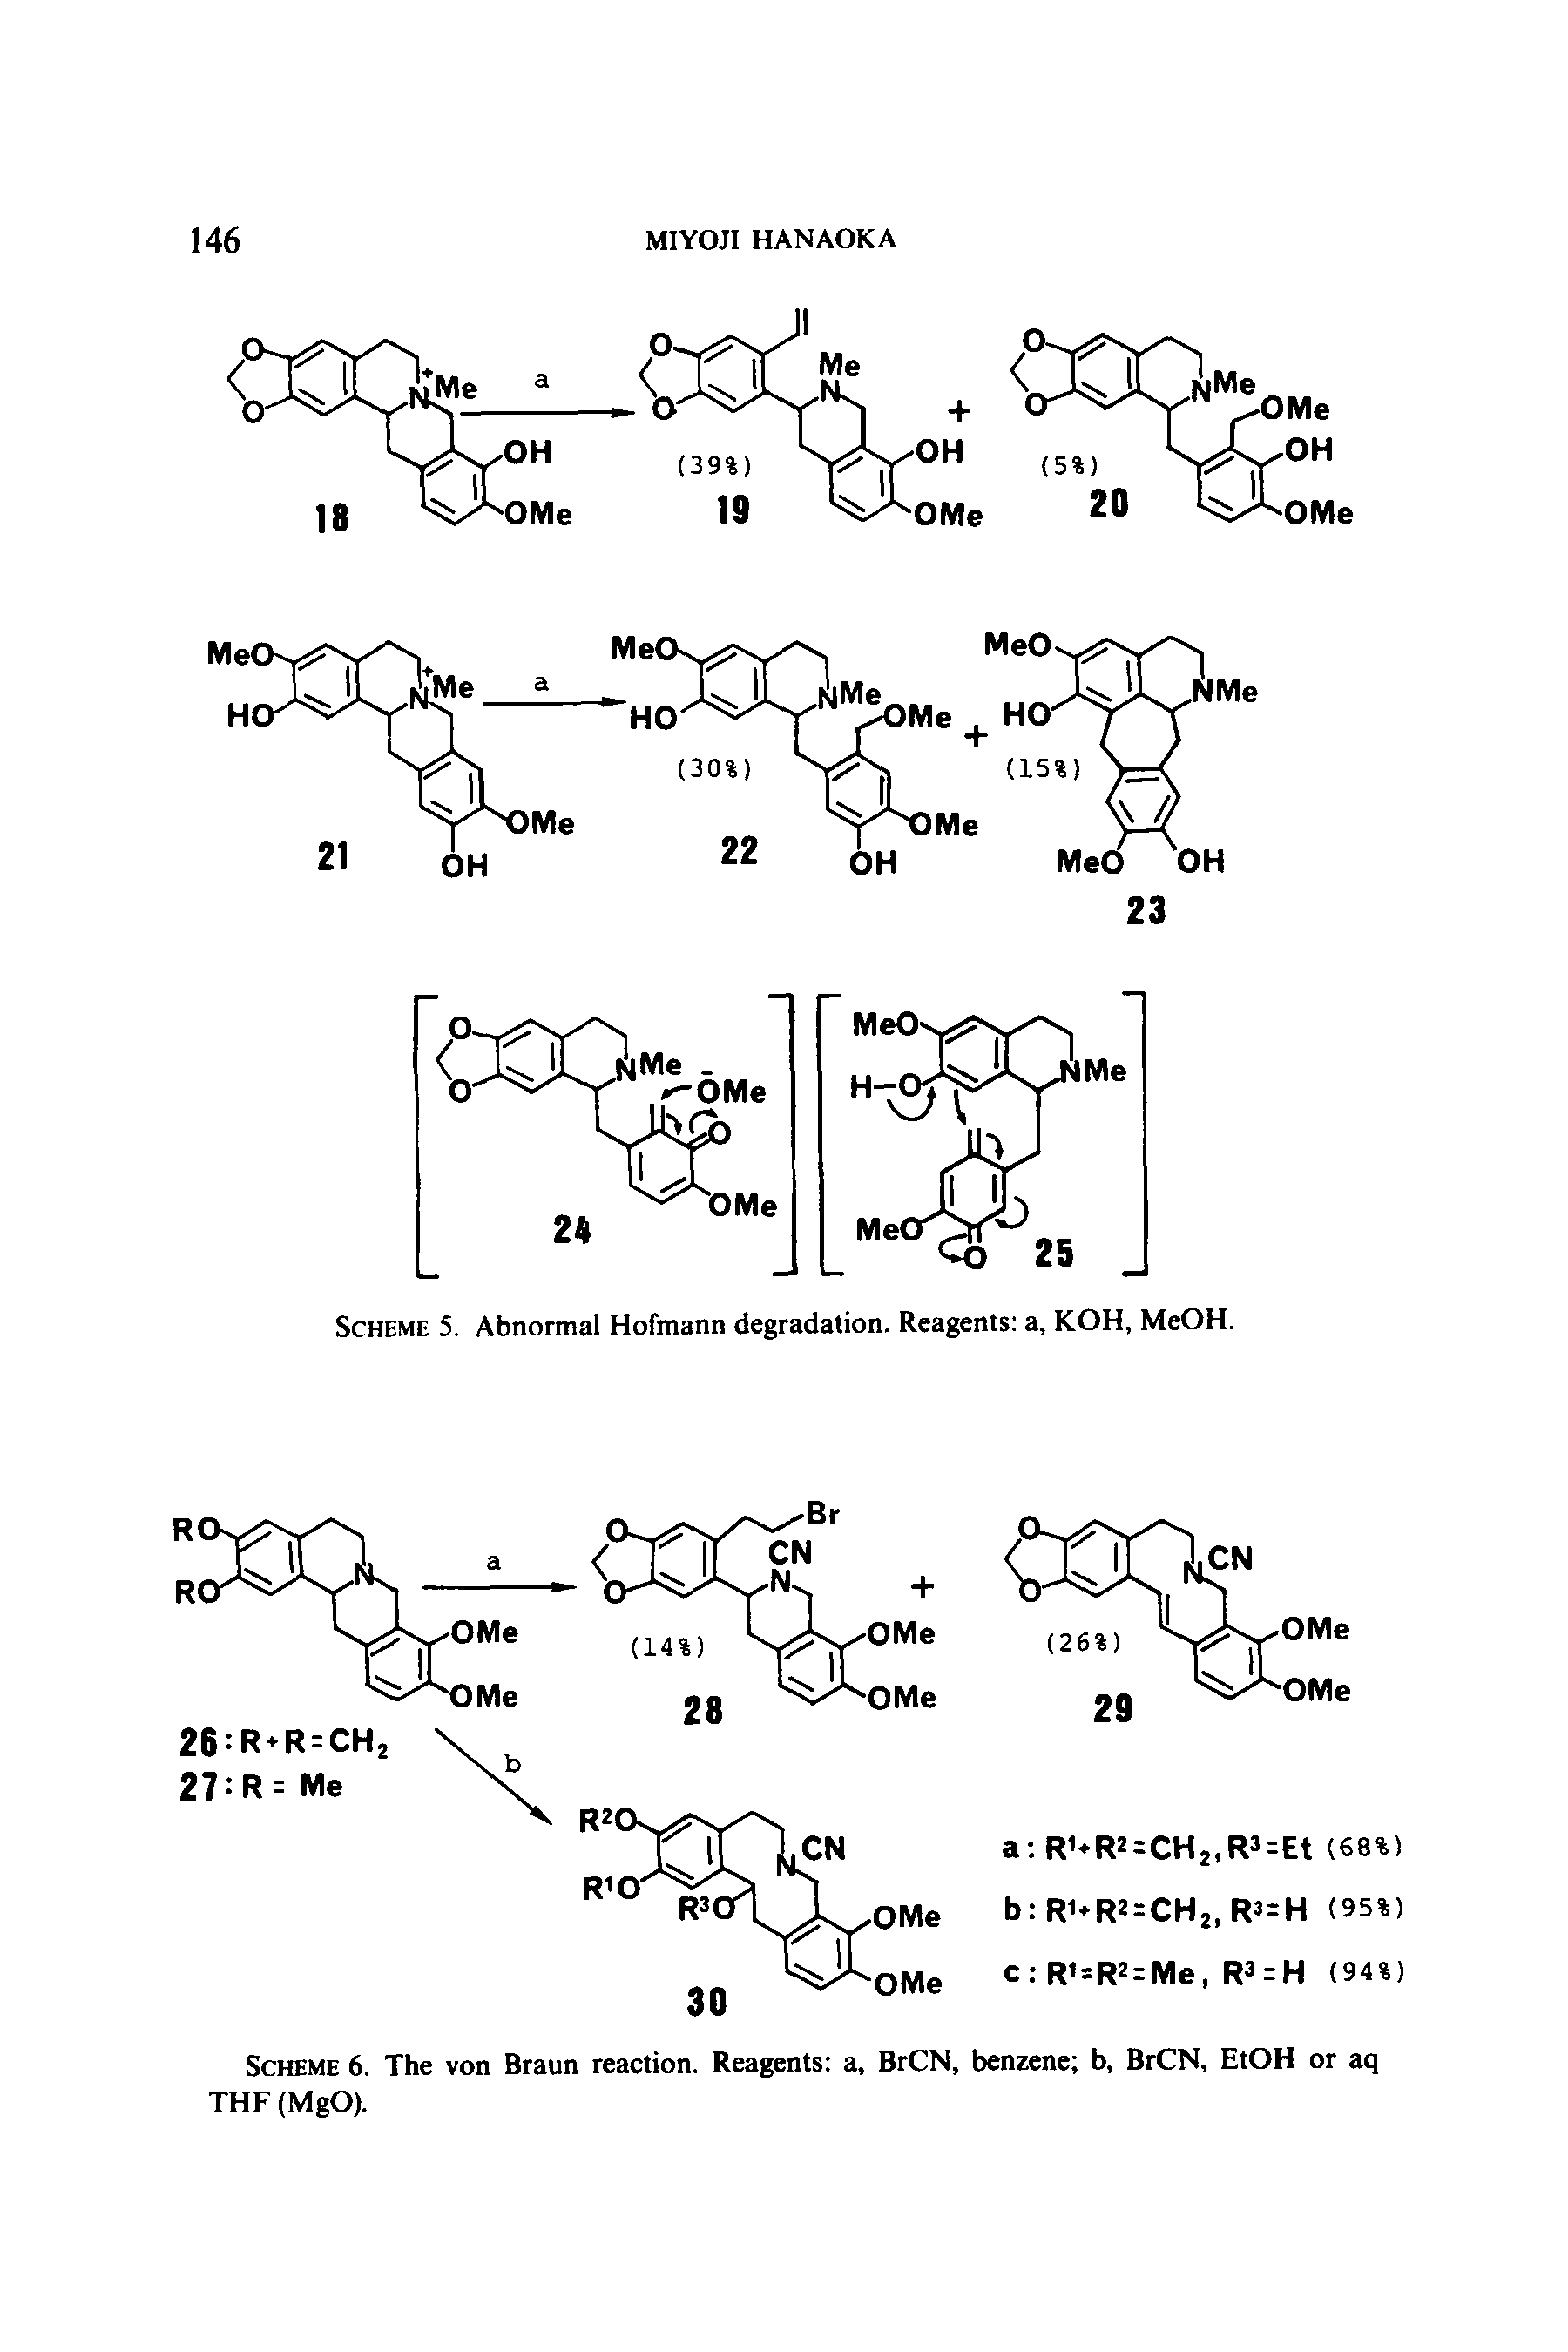 Scheme 6. The von Braun reaction. Reagents a, BrCN, benzene b, BrCN, EtOH or aq THF (MgO).